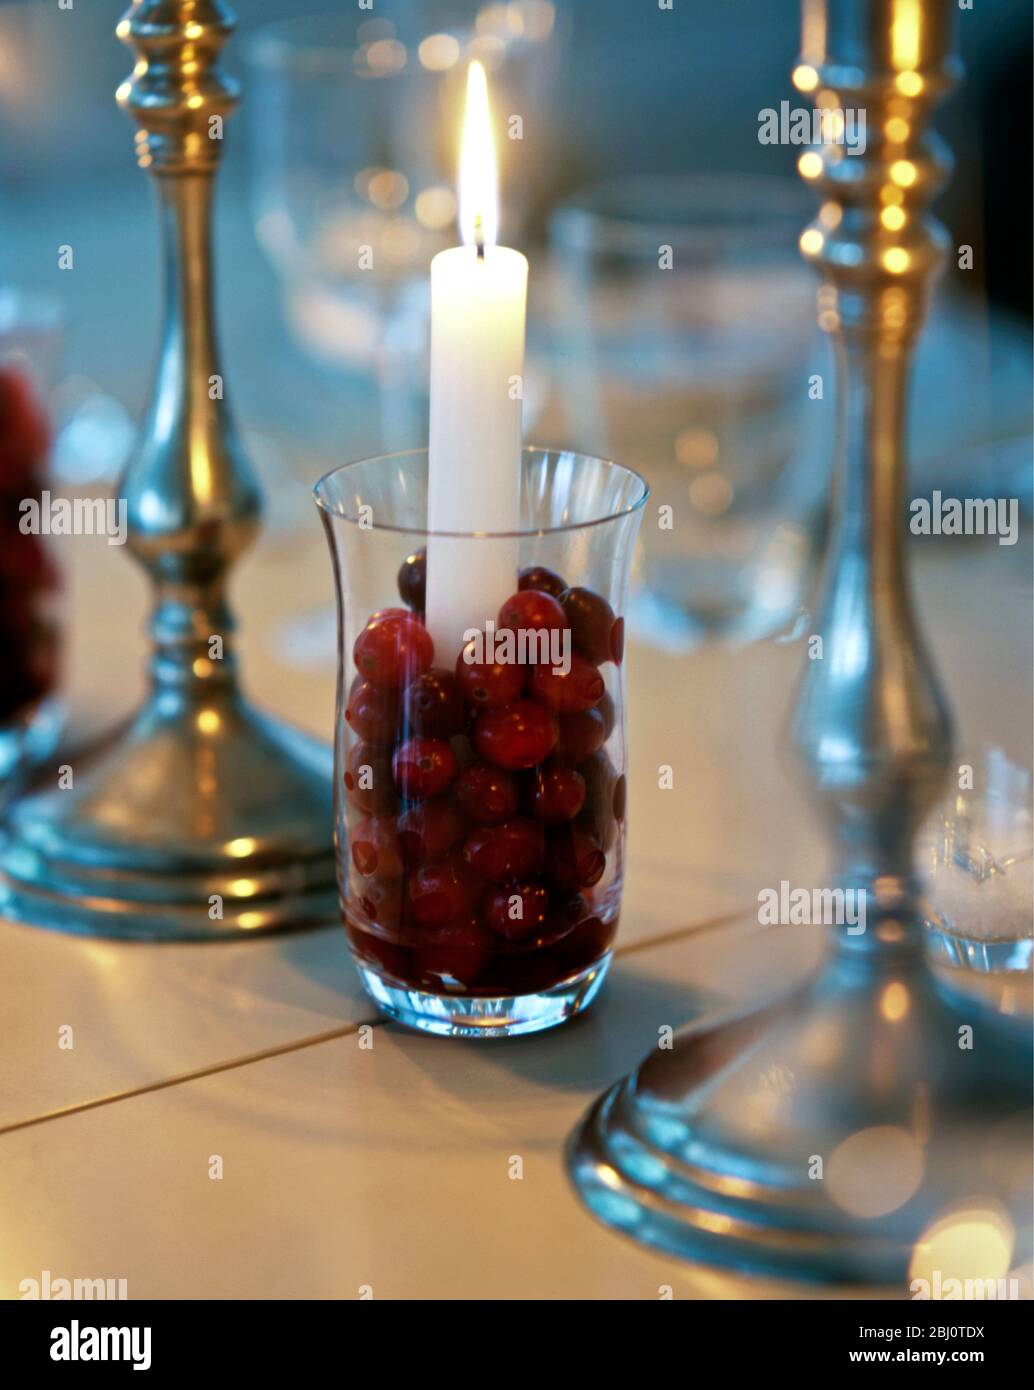 Weihnachtsdekoration von Preiselbeeren um Kerze im Glas mit Zinn Kerzenständer - Stockfoto